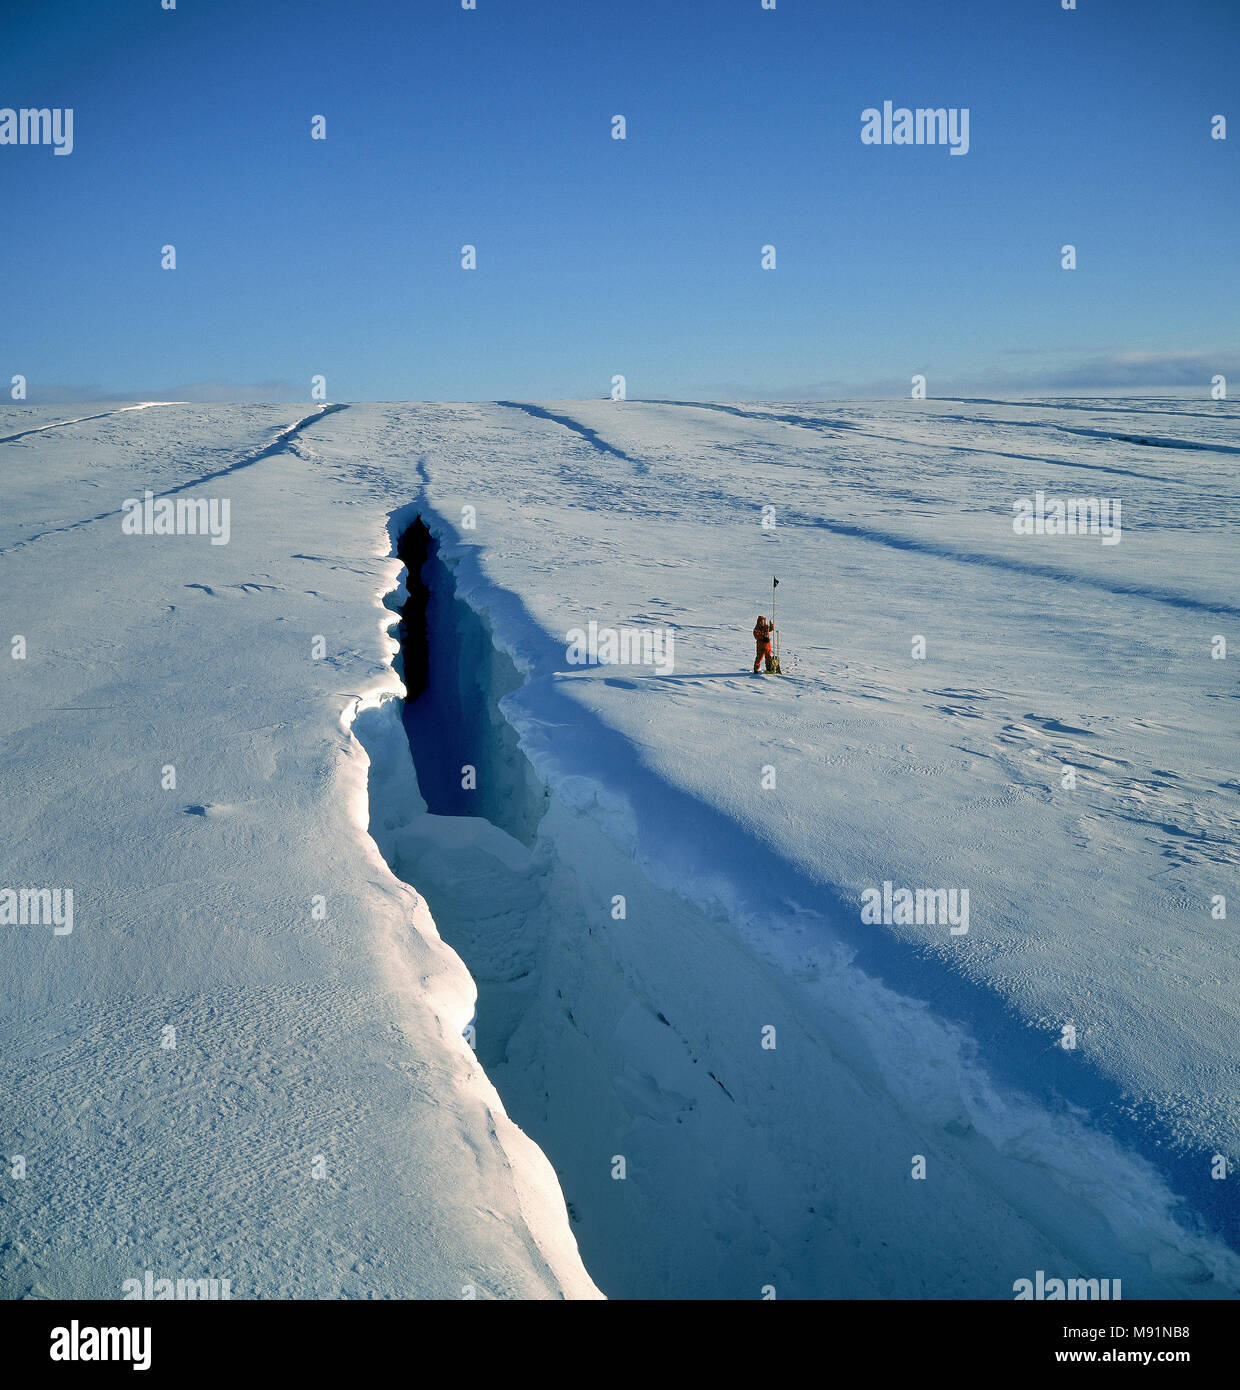 Wissenschaftler Messungen von einem großen gletscherspalte, Sidujokull, Eiskappe des Vatnajökull, Island. Stockfoto